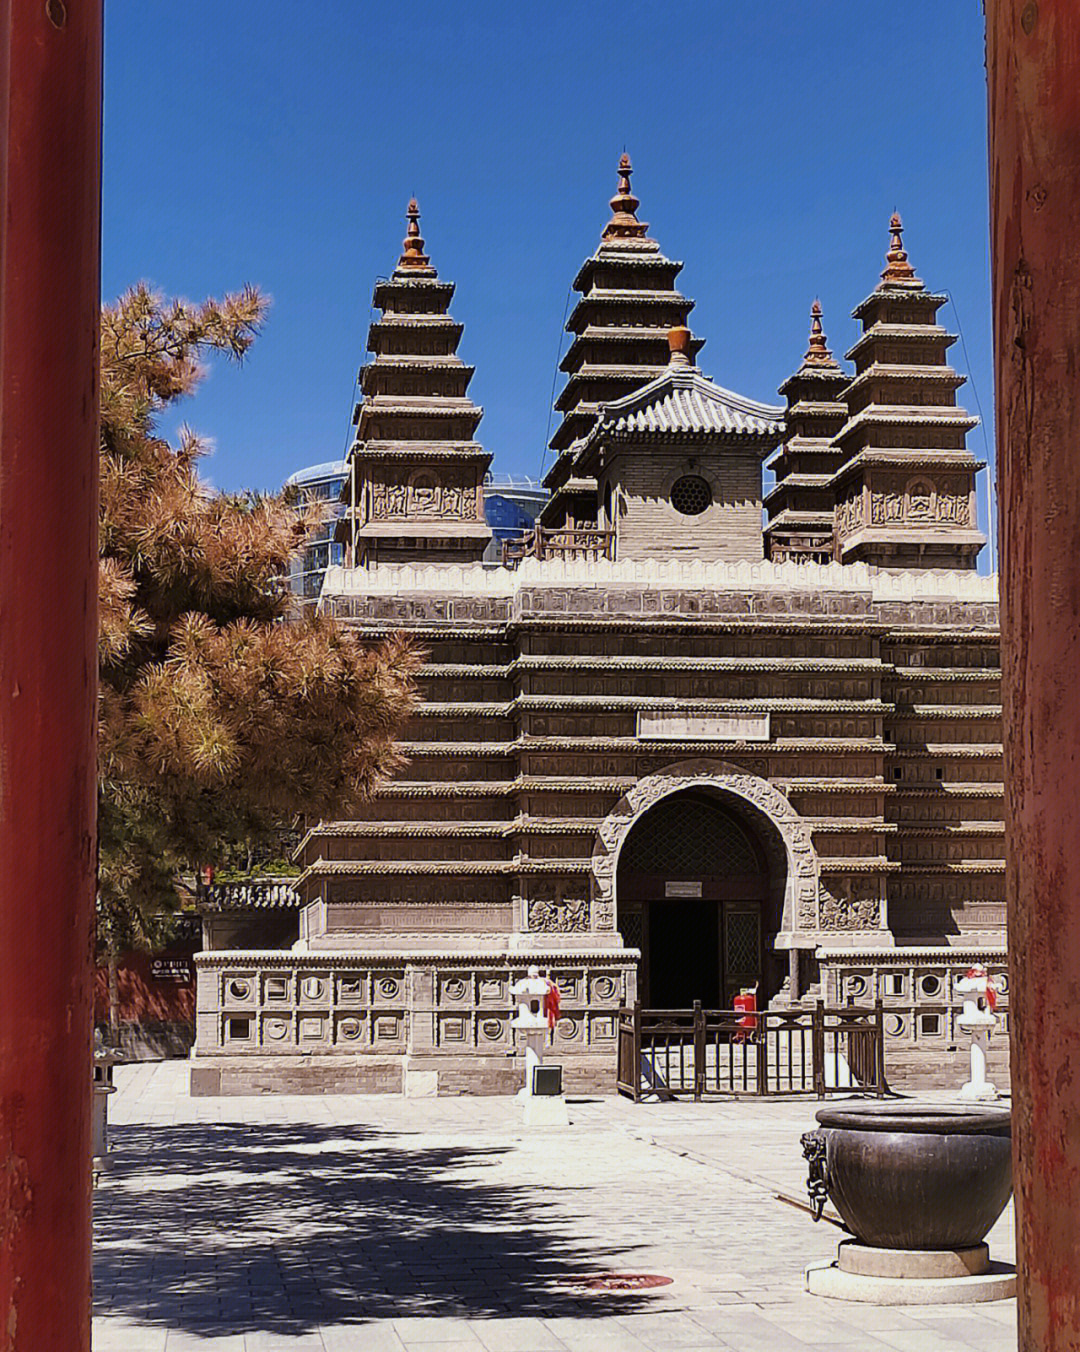 呼市五塔寺位于内蒙古呼和浩特市旧城东南部,原名金刚座舍利宝塔,因塔